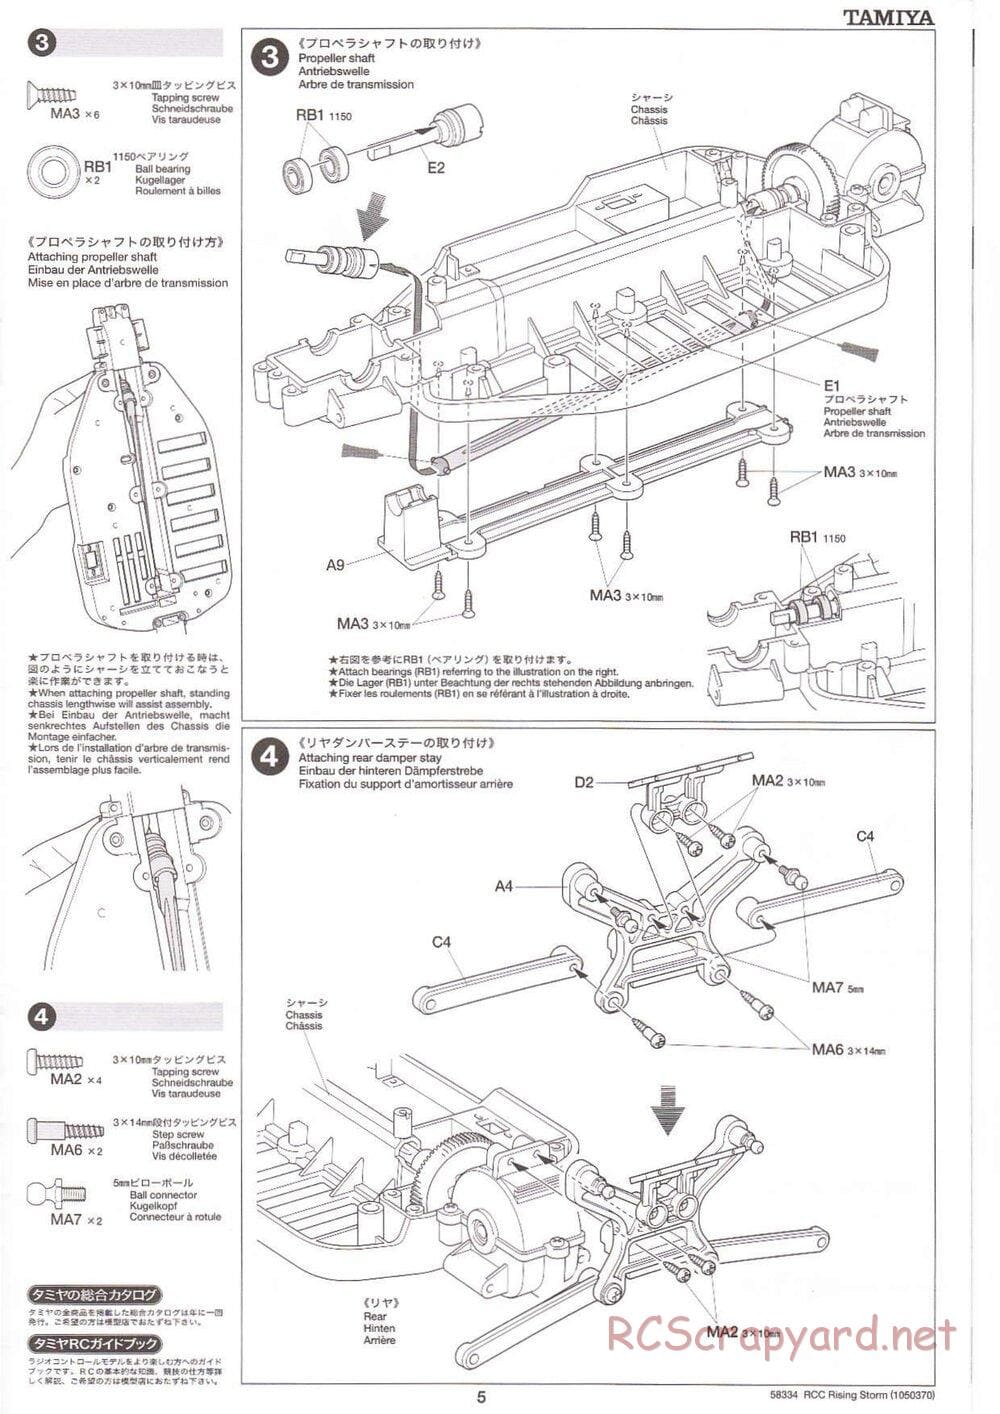 Tamiya - Rising Storm Chassis - Manual - Page 5